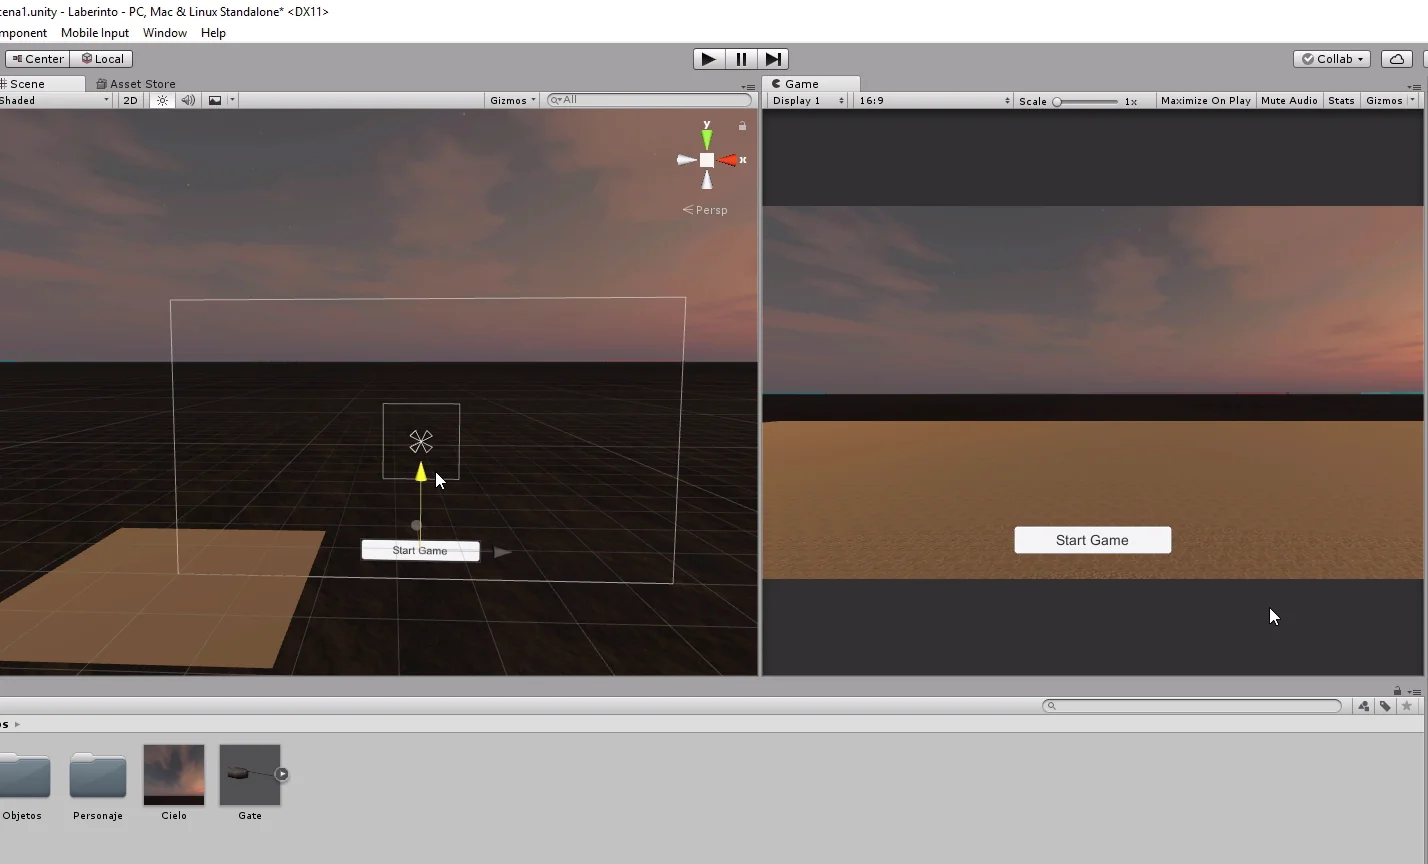 ventana partida de unity 3d en una ventana se ve la escena y en la otra el juego, con esto se visualiza la interfaz gráfica.